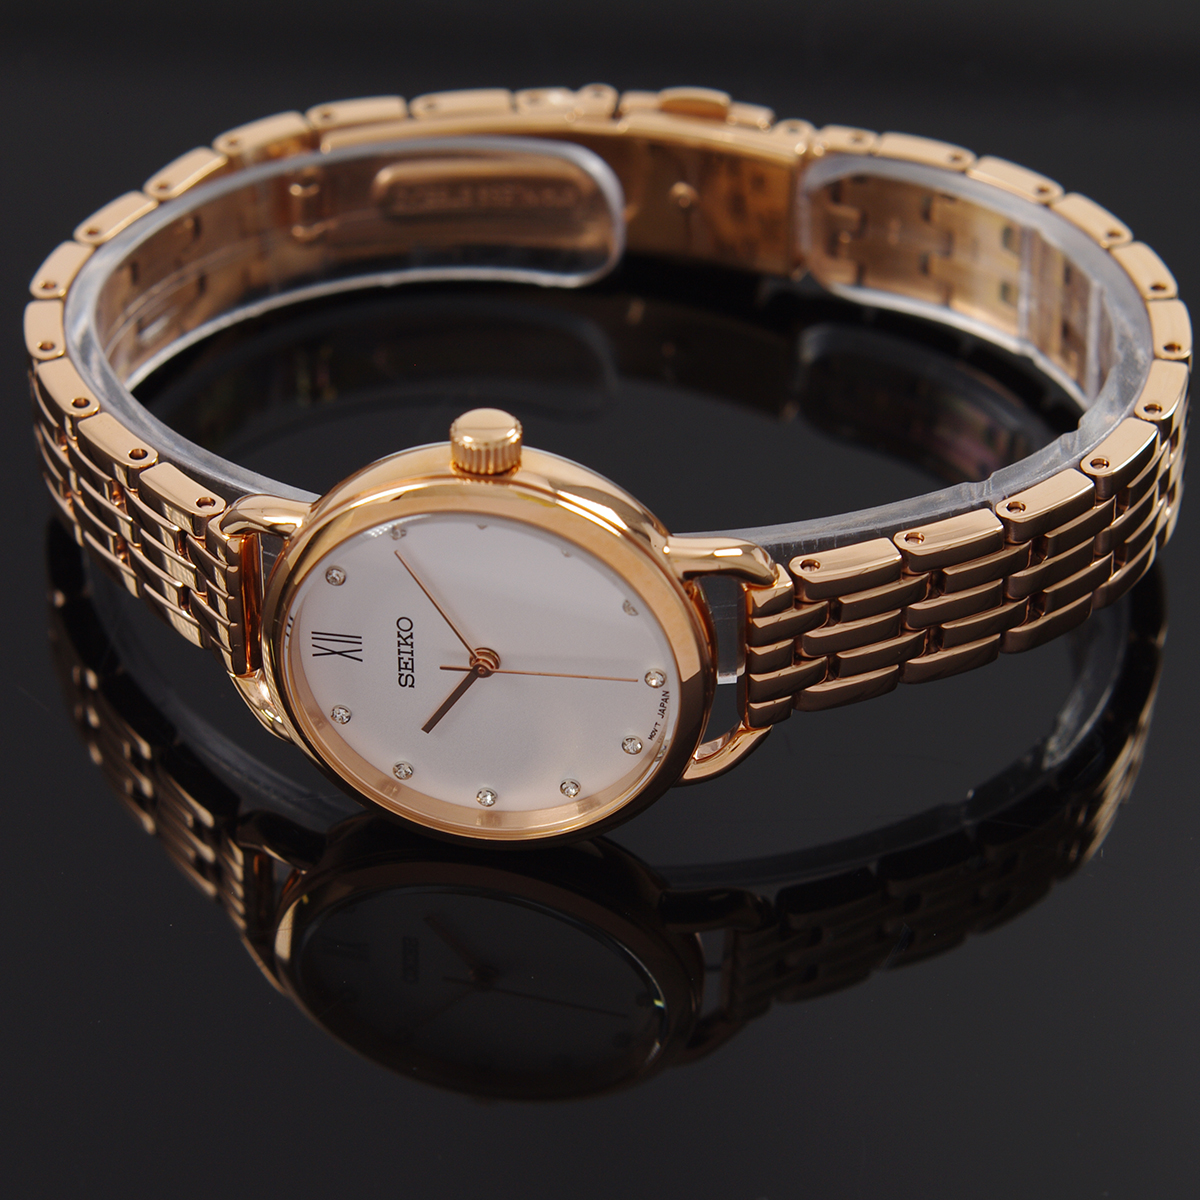 セイコー SEIKO 腕時計 クォーツ スワロフスキークリスタル使用 日本製ムーブメント 海外モデル ホワイト文字盤 SUR698P1 レディース  [逆輸入品] | アッキーインターナショナル